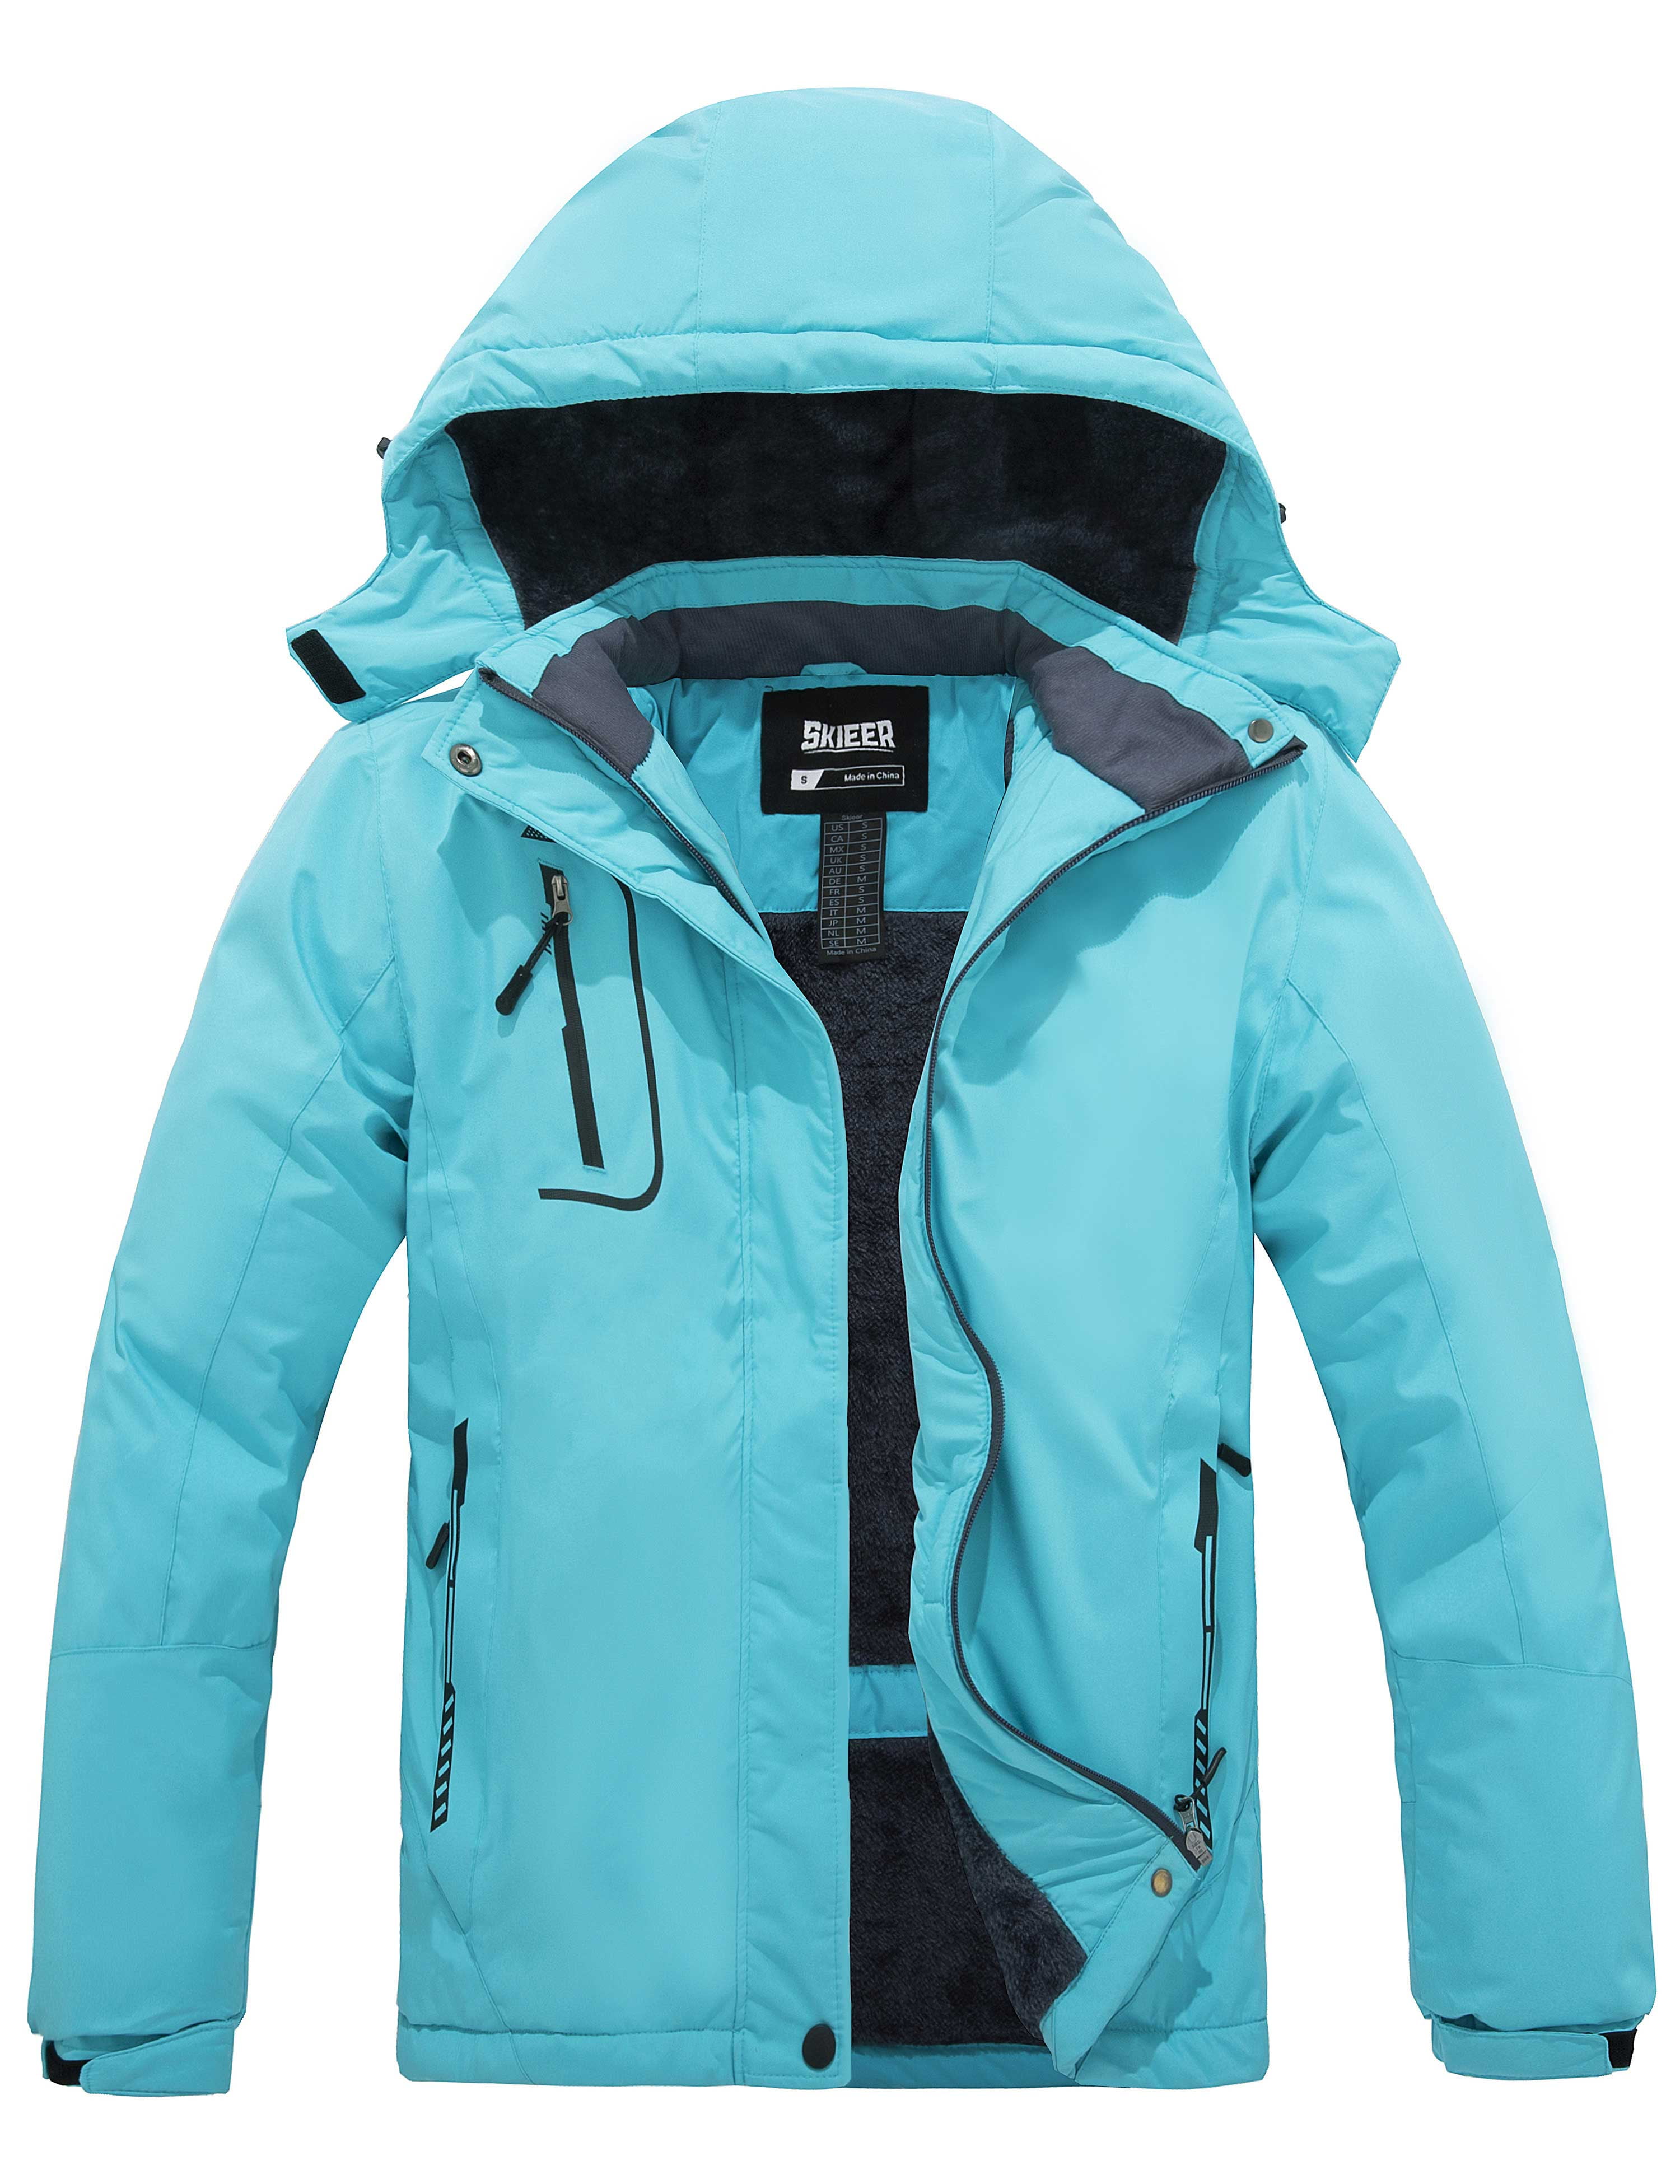 Skieer Women's Waterproof Ski Jacket Windproof Rain Jacket Winter Warm  Hooded Coat Light Blue Small